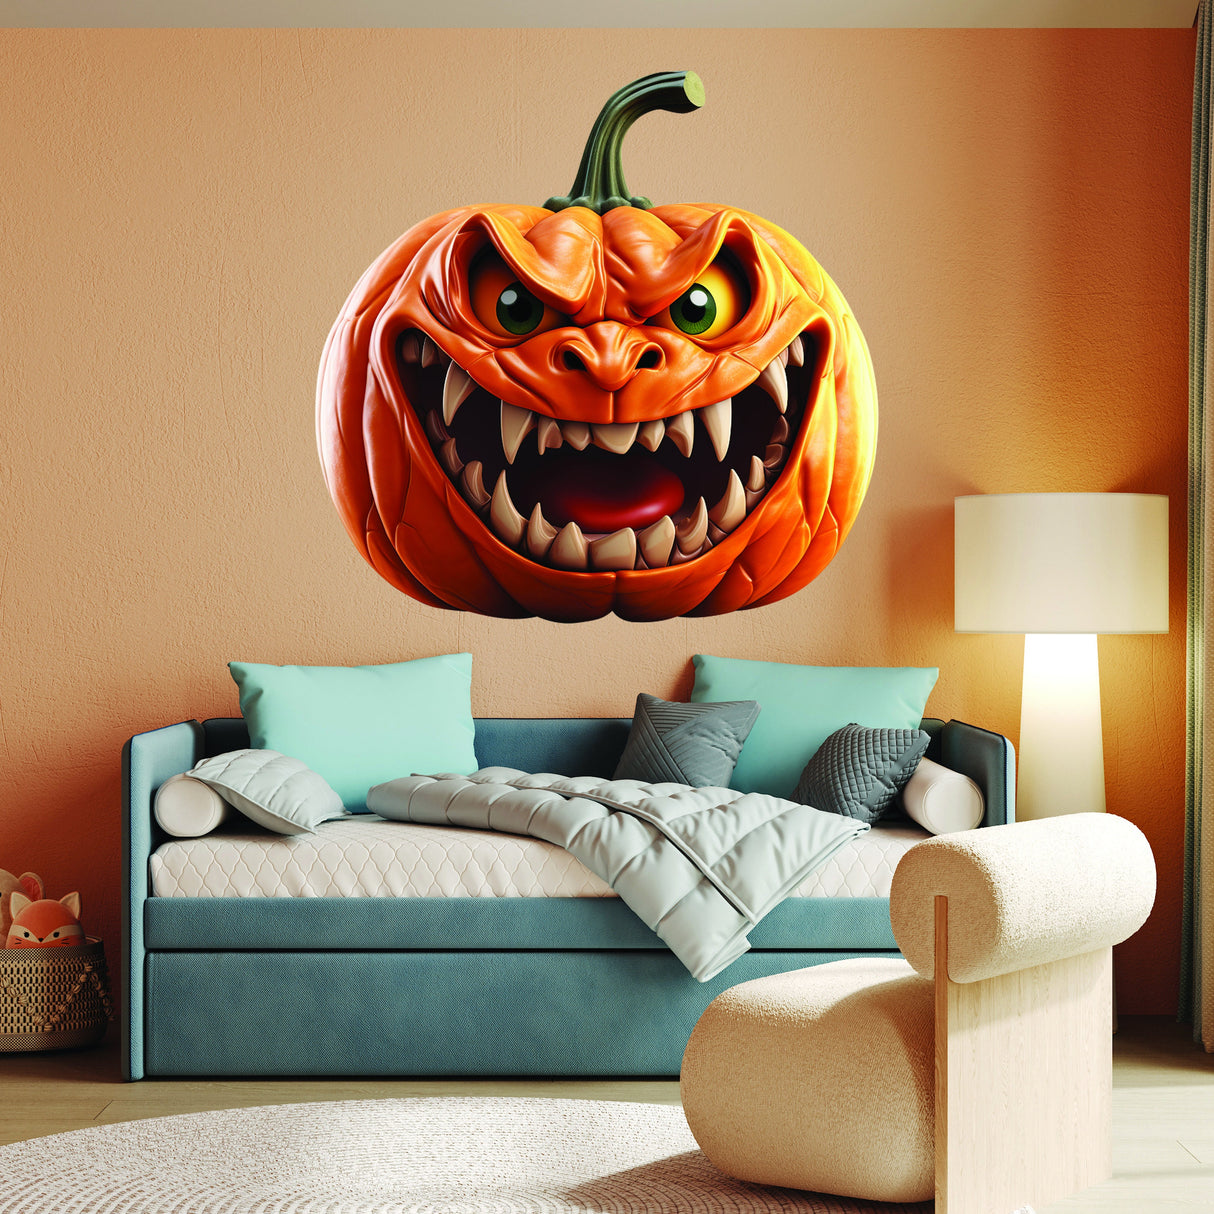 3D Halloween Wall Decal - Spooky Pumpkin Design Masterpiece